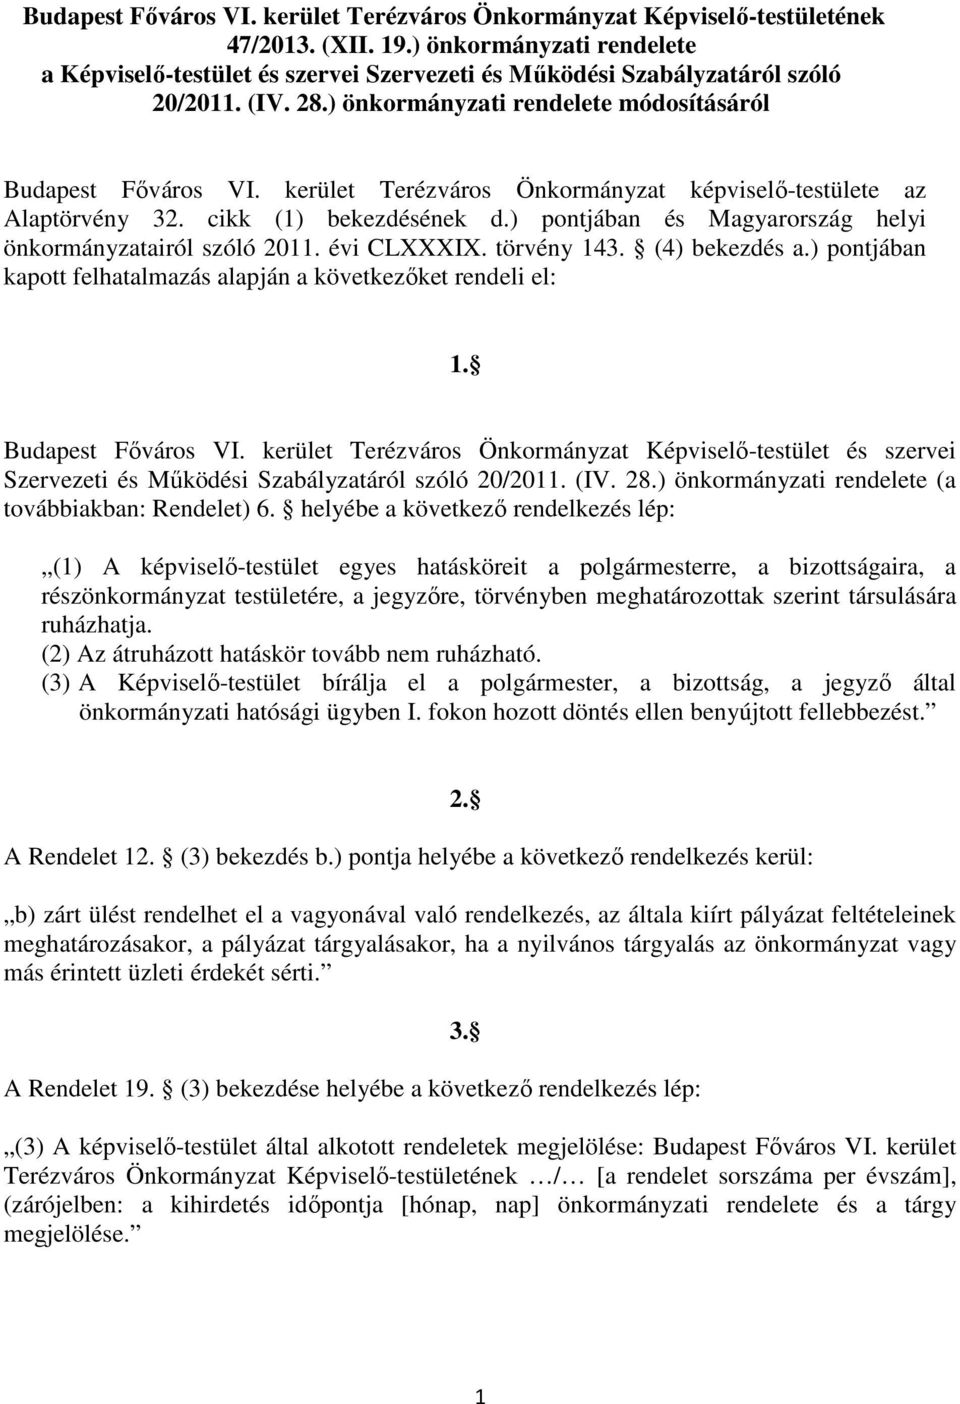 kerület Terézváros Önkormányzat képviselő-testülete az Alaptörvény 32. cikk (1) bekezdésének d.) pontjában és Magyarország helyi önkormányzatairól szóló 2011. évi CLXXXIX. törvény 143. (4) bekezdés a.